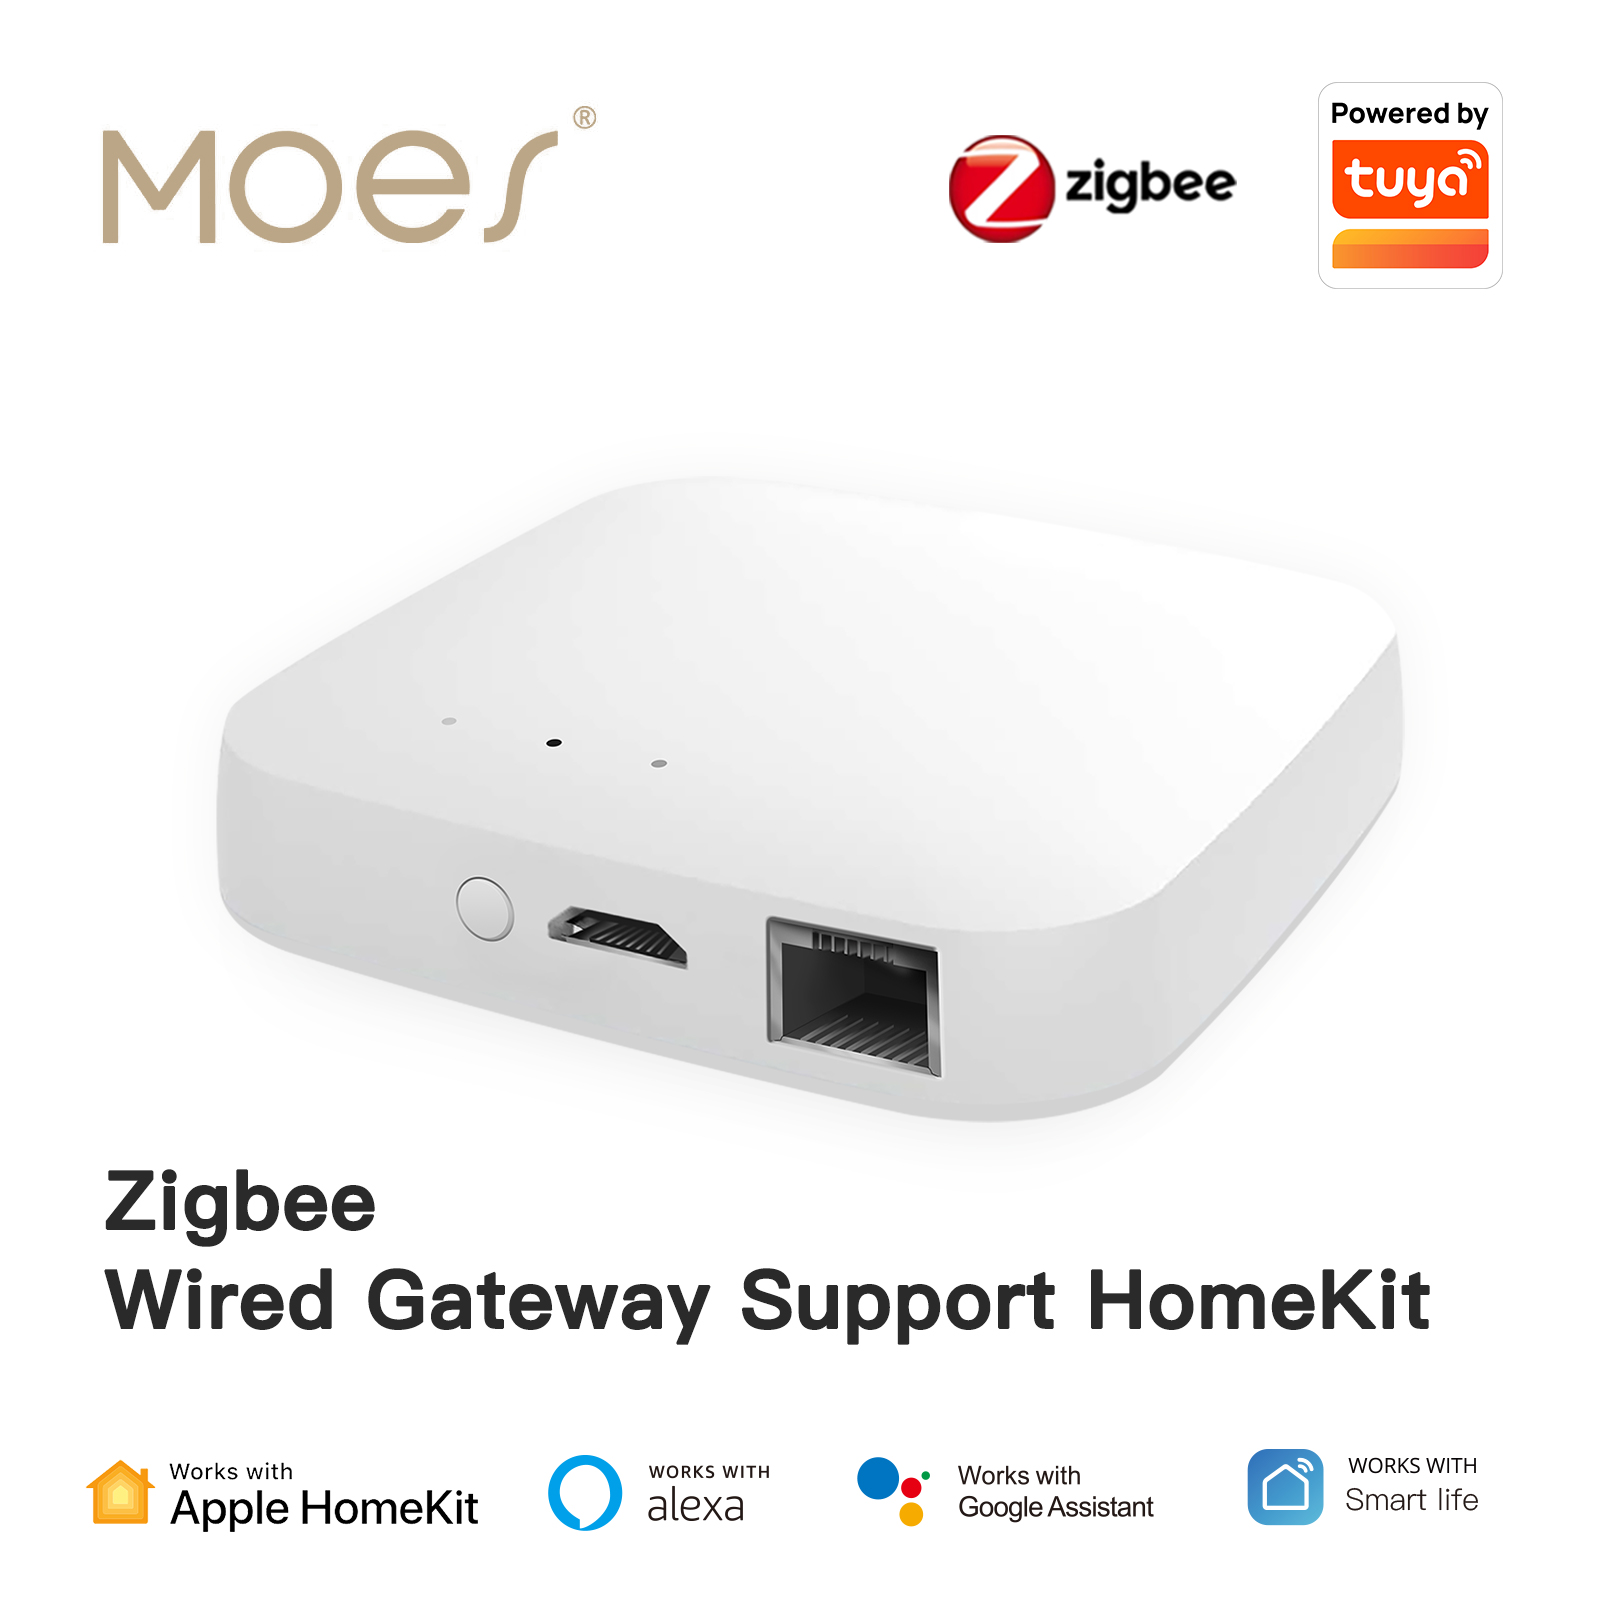 Support 128 Devices Wired Zigbee Hub Apple Homekit Hub Tuya Zigbee Gateway